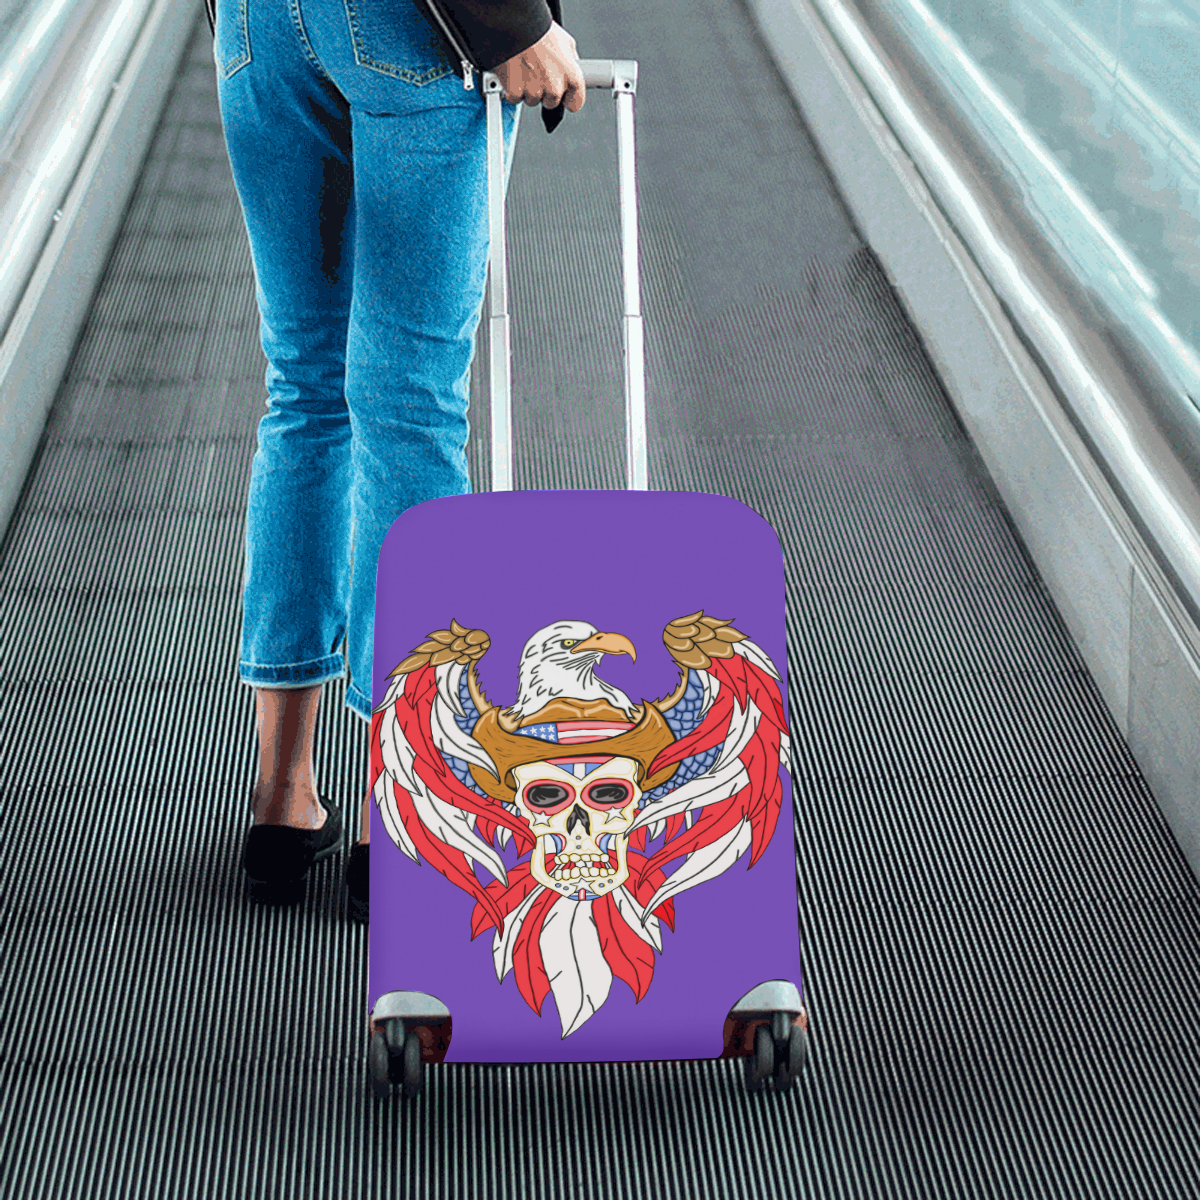 American Eagle Sugar Skull Purple Luggage Cover/Small 18"-21"